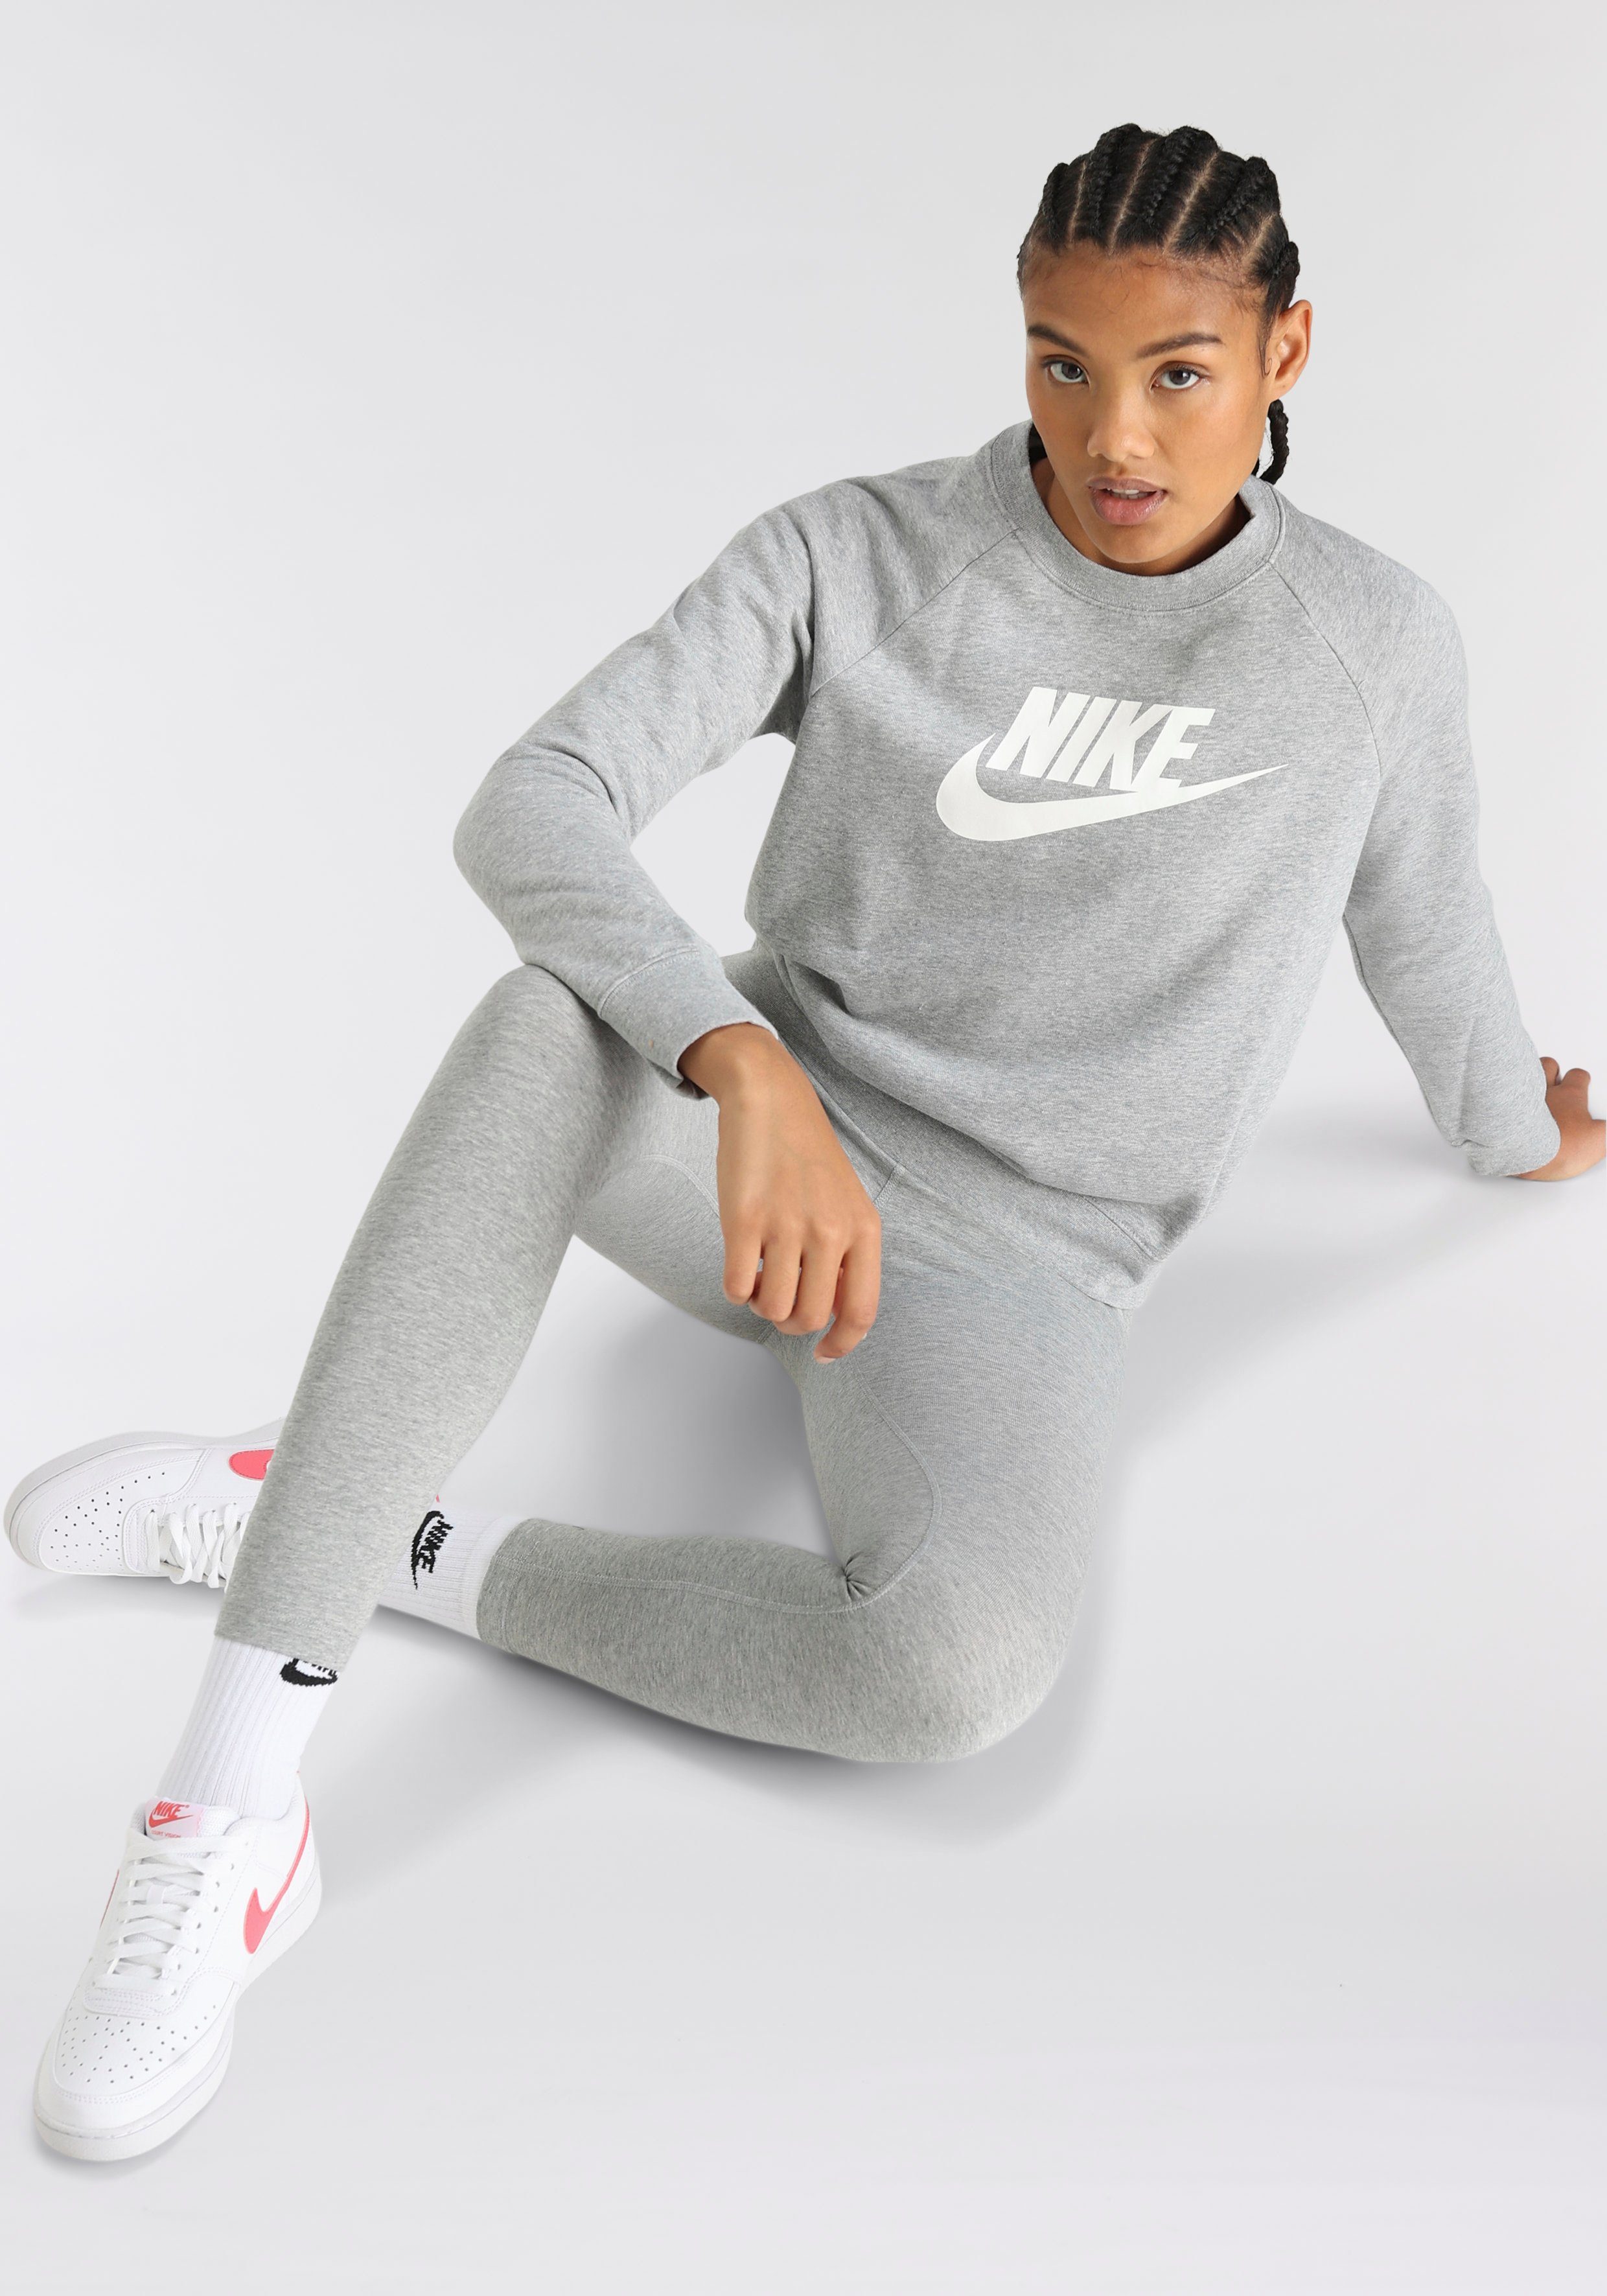 Nike Sportswear Sweatshirt WOMEN ESSENTIAL hellgrau-meliert FLEECE CREW